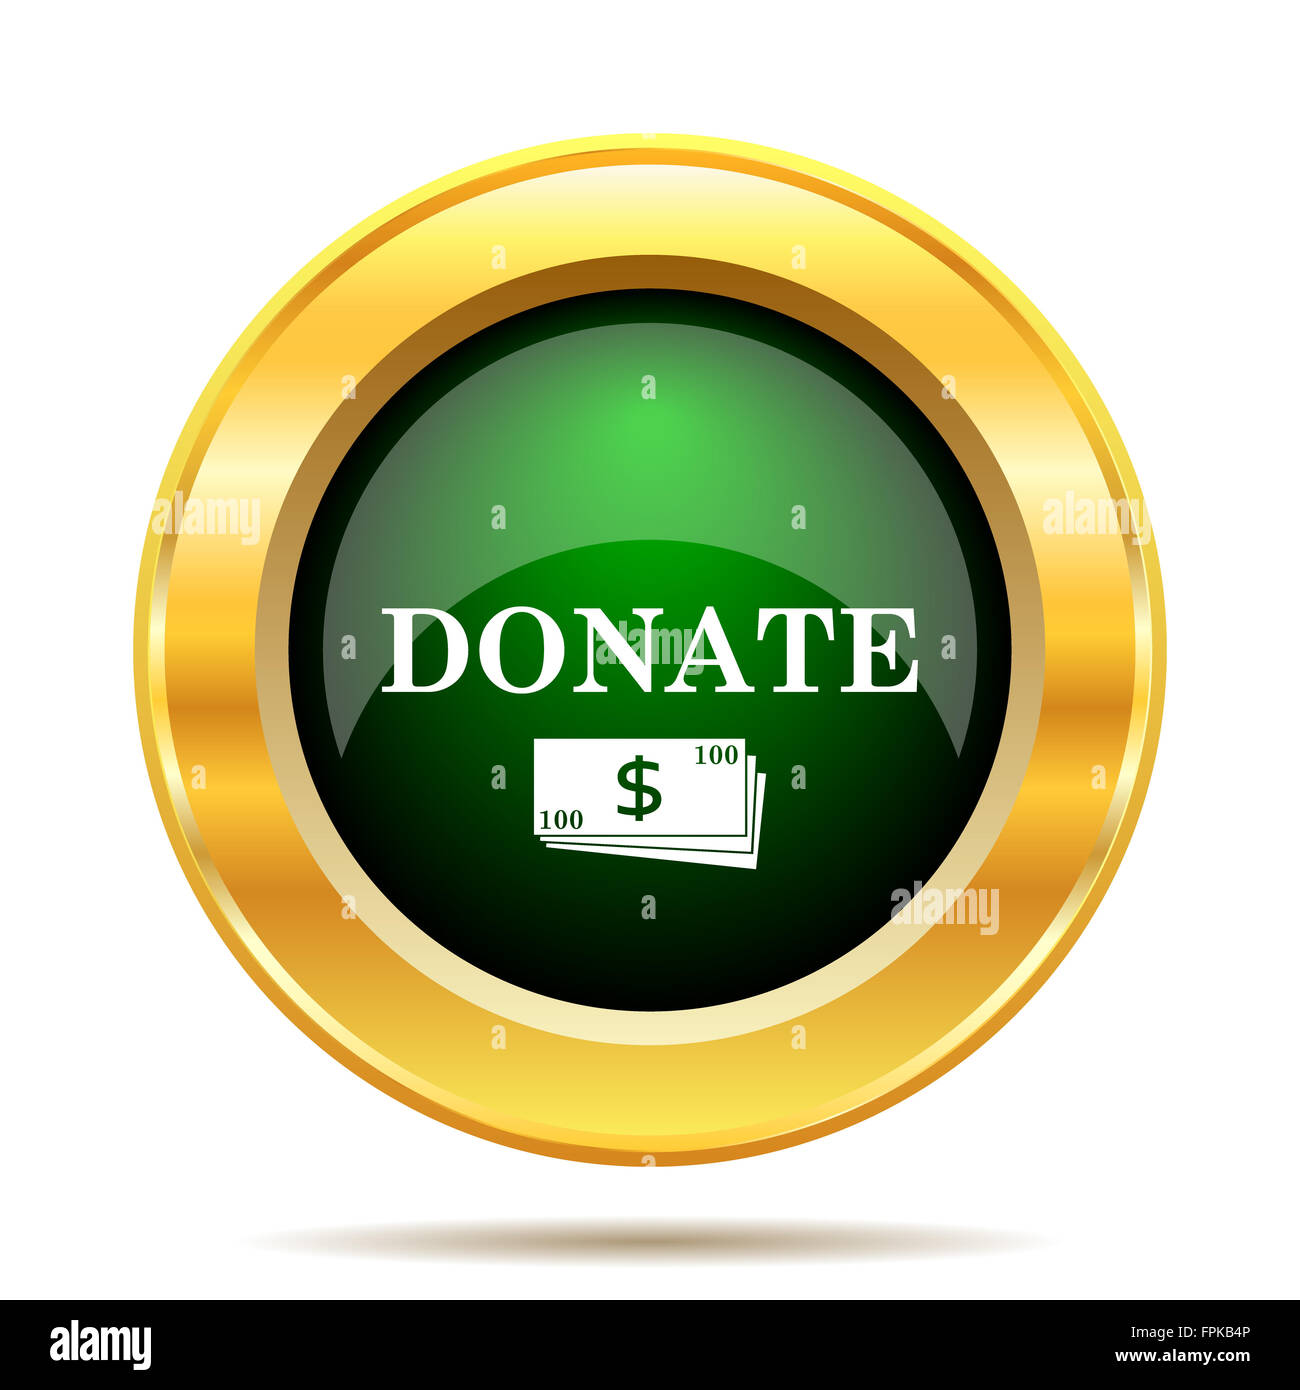 Donate icon. Internet button on white background. Stock Photo